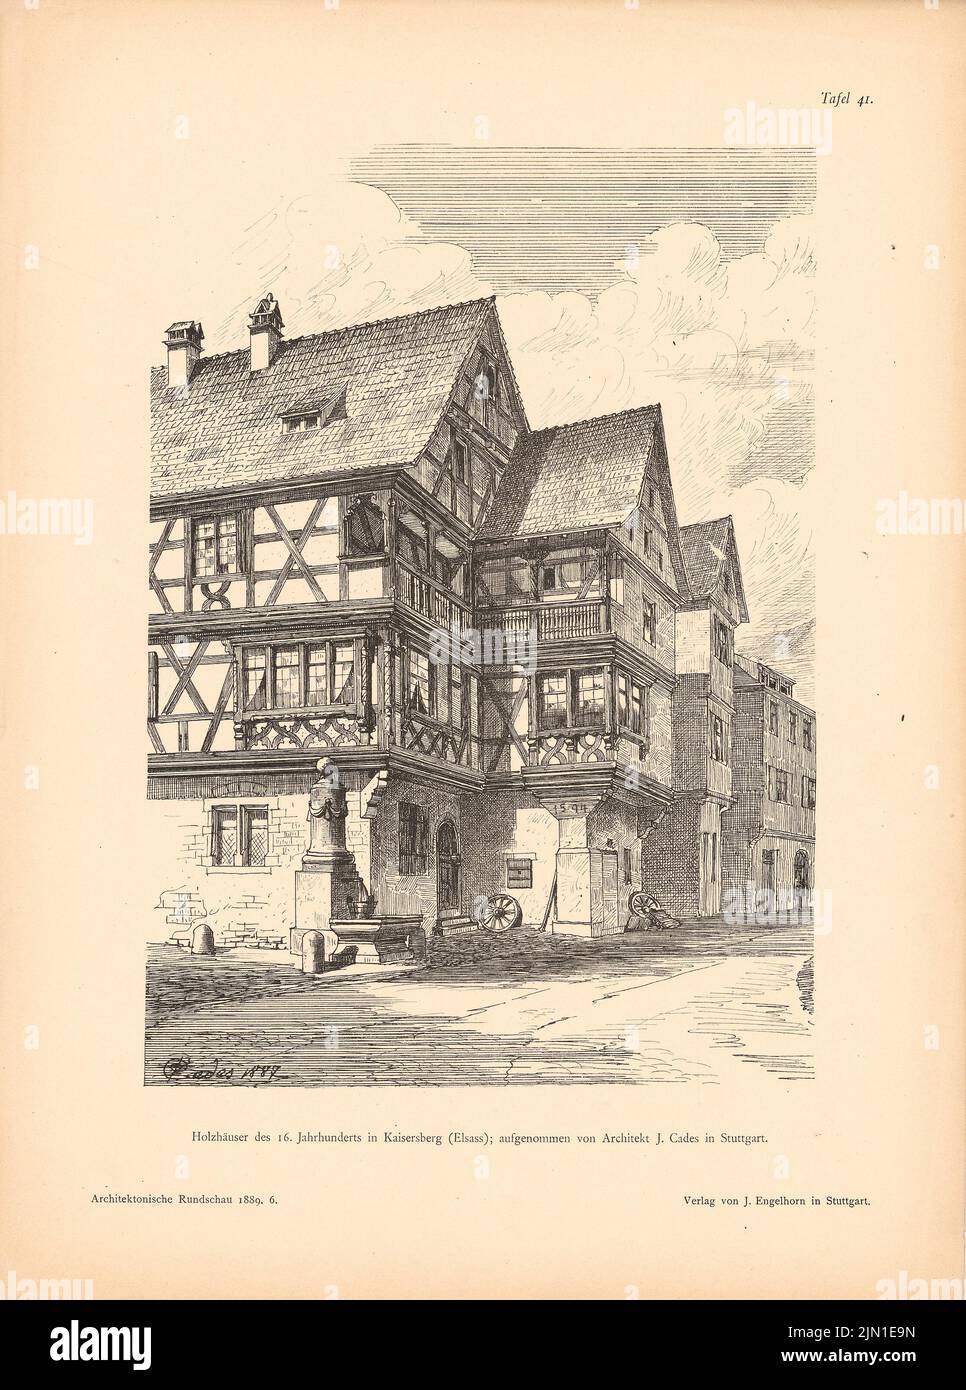 Cades J., wooden houses of the 16th century, Kaysersberg. (From: Architect. Rundschau, ed. V. Eisenlohr & Weigle, 1889) (1887): Perspective view. Pressure on paper, 38.8 x 28.9 cm (including scan edges) Cades J. : Holzhäuser des 16. Jahrhunderts, Kaysersberg. (Aus: Architekt. Rundschau, hrsg.v. Eisenlohr & Weigle, 1889) Stock Photo